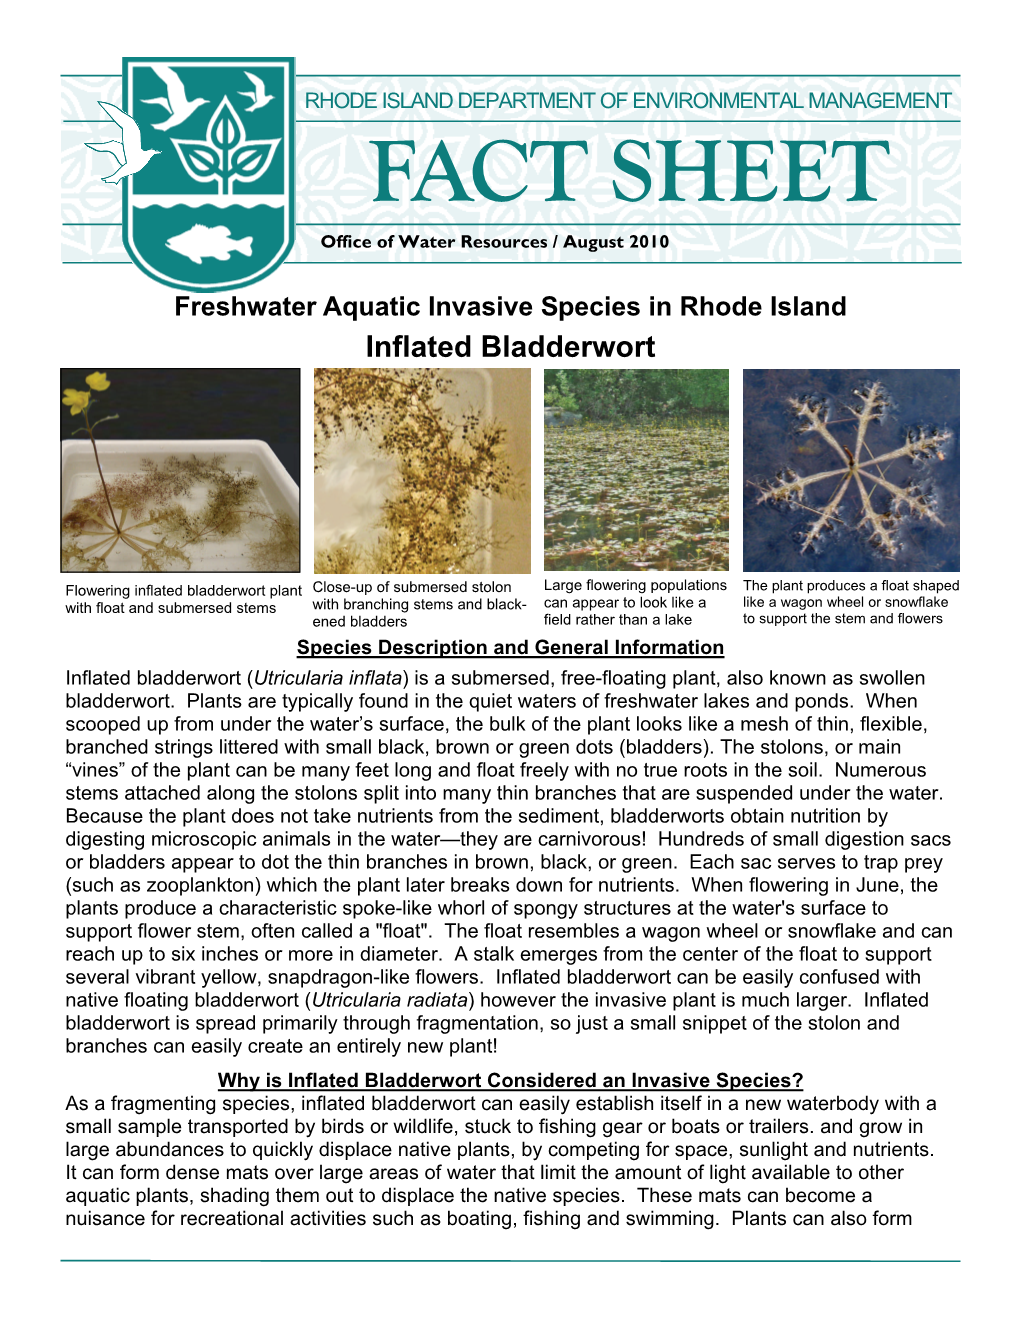 AIS Inflated Bladderwort Fact Sheet